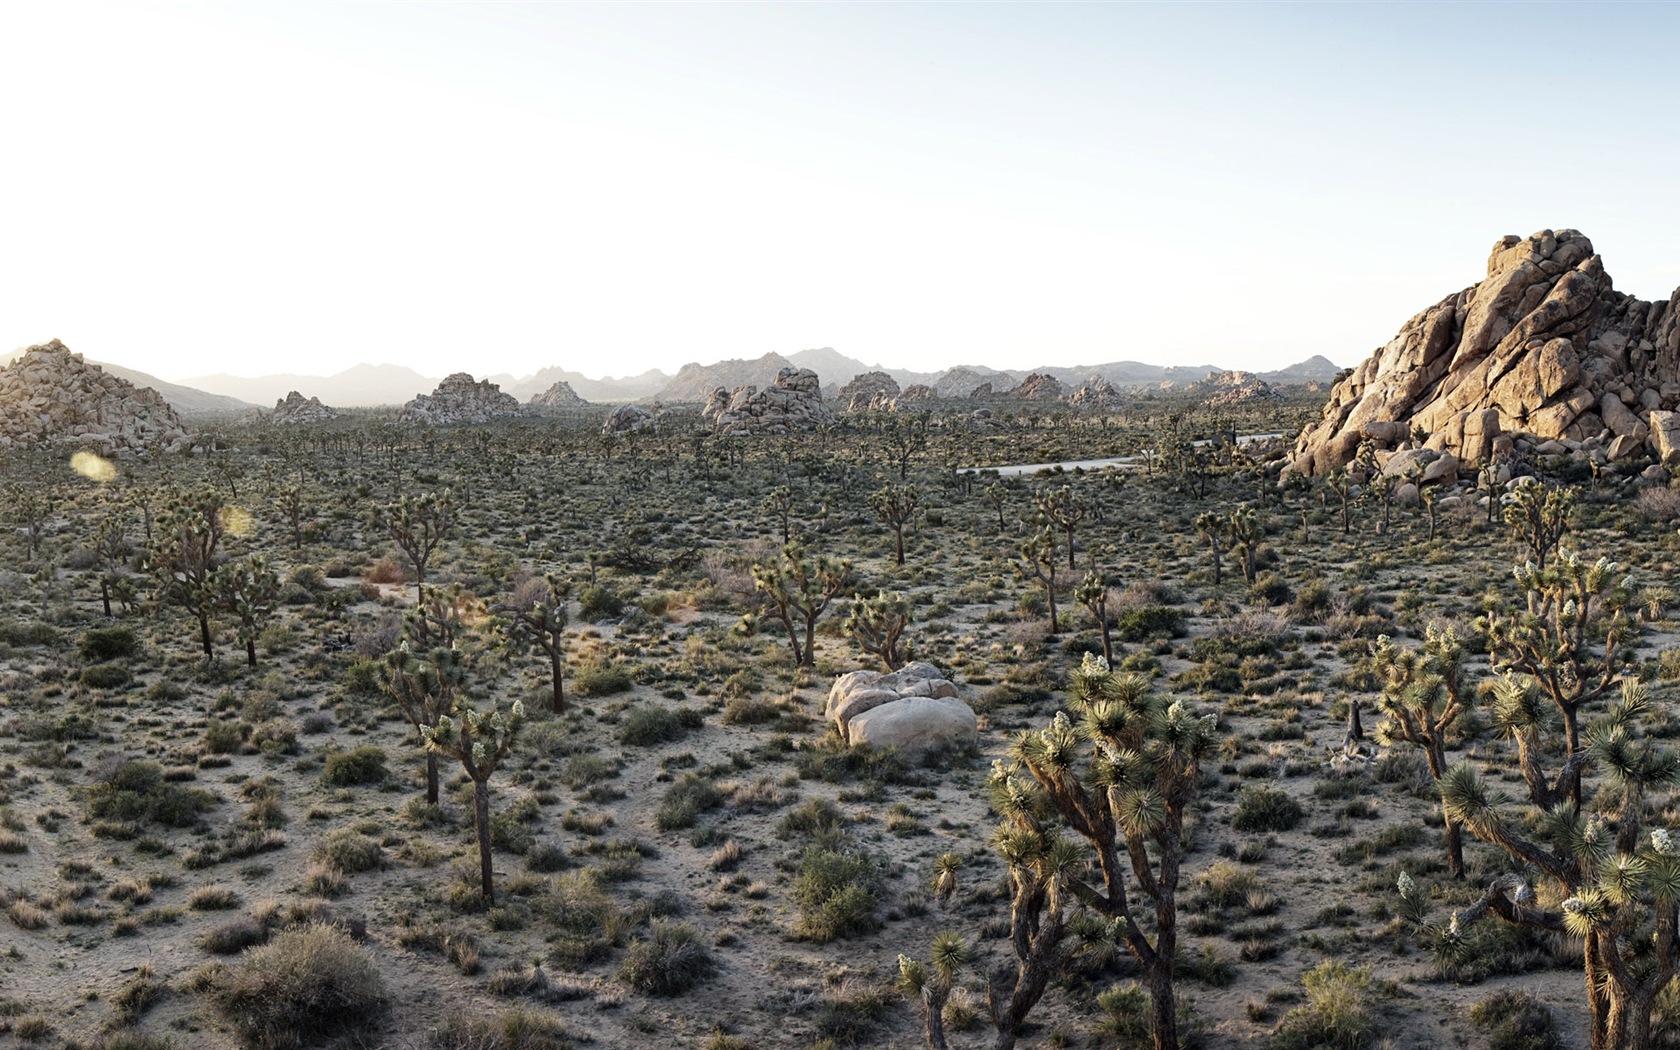 Les déserts chauds et arides, de Windows 8 fonds d'écran widescreen panoramique #9 - 1680x1050